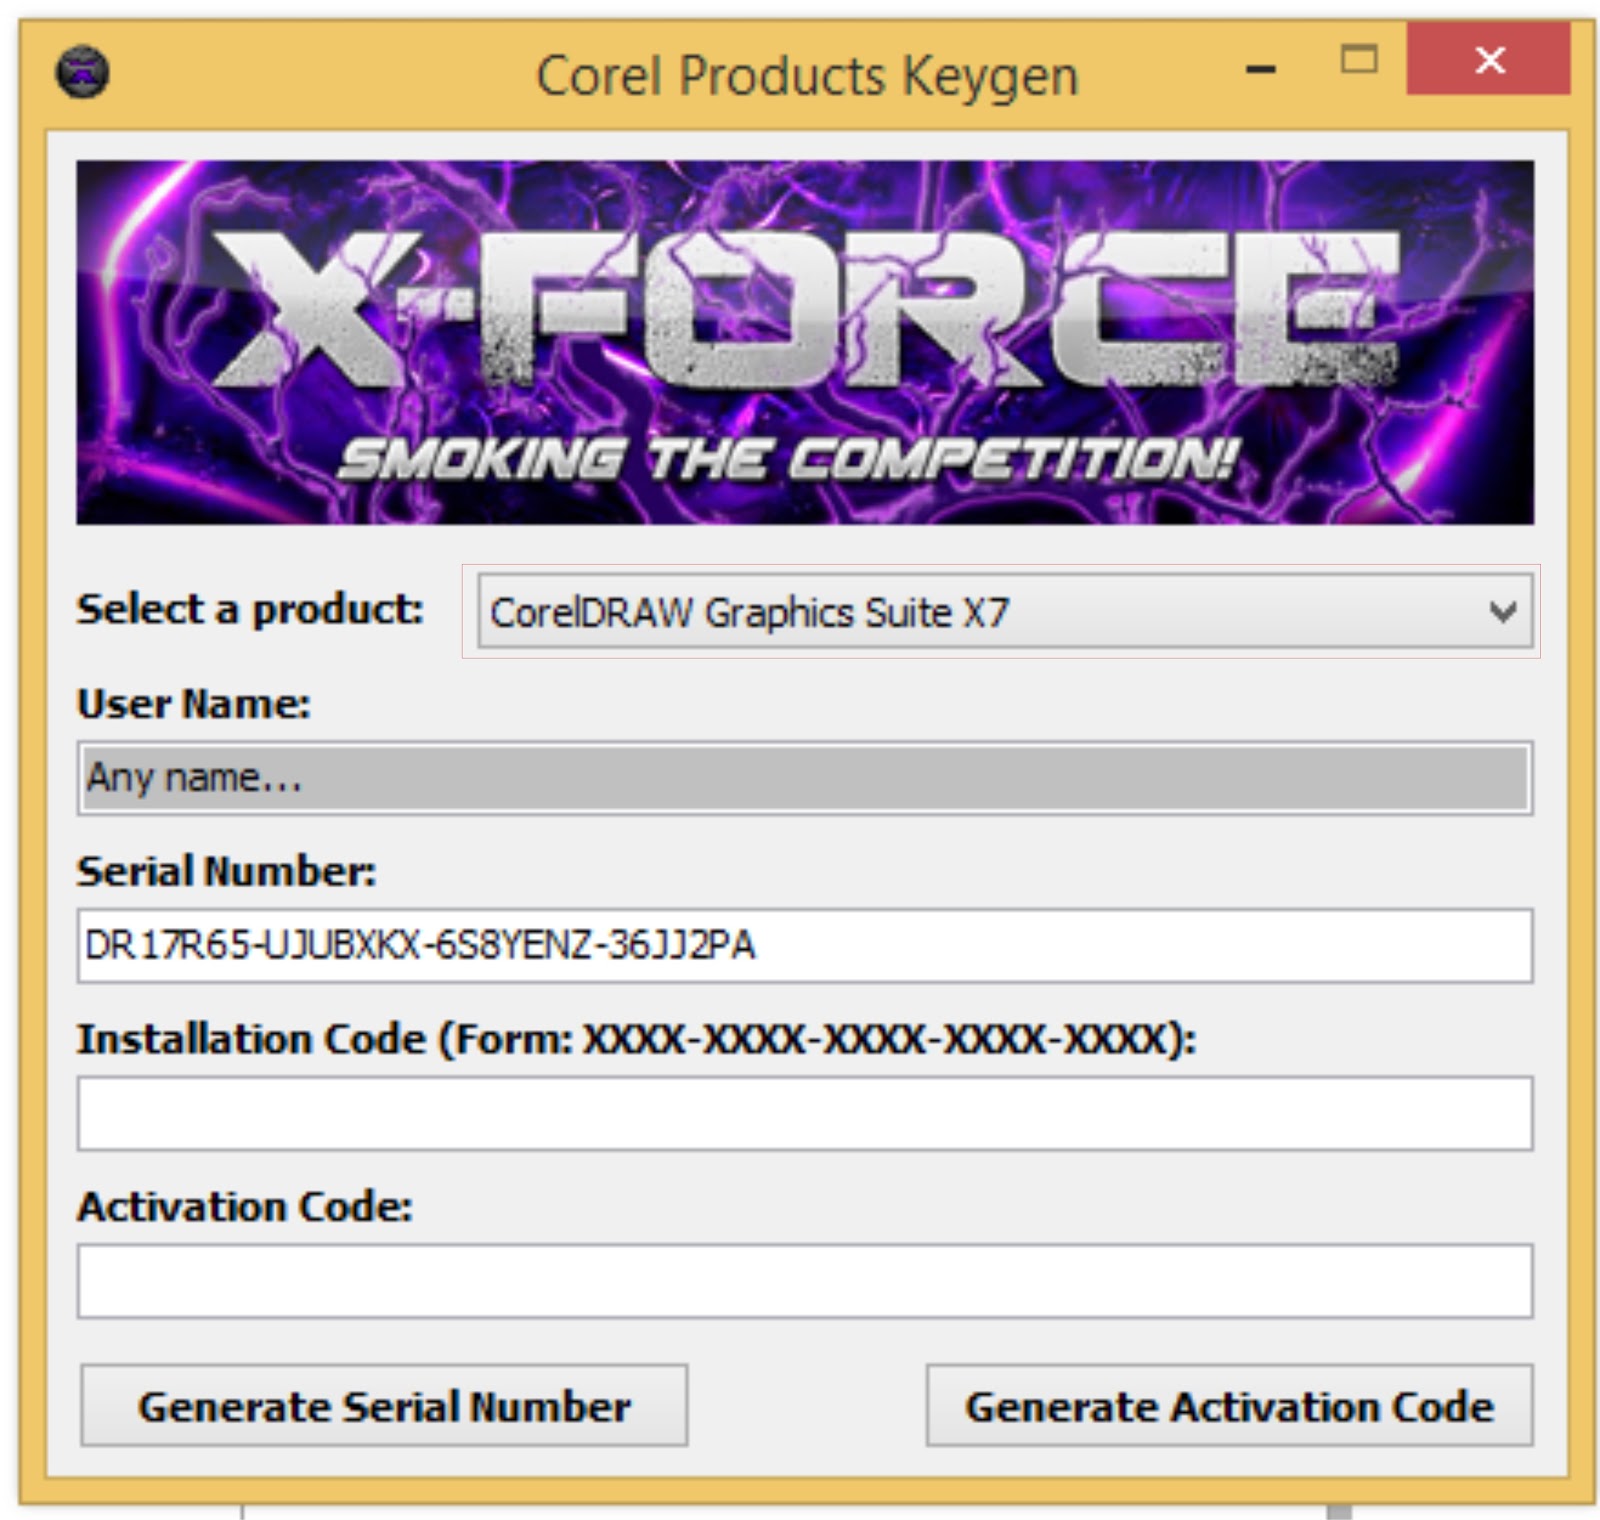 coreldraw graphics suite x7 amazon